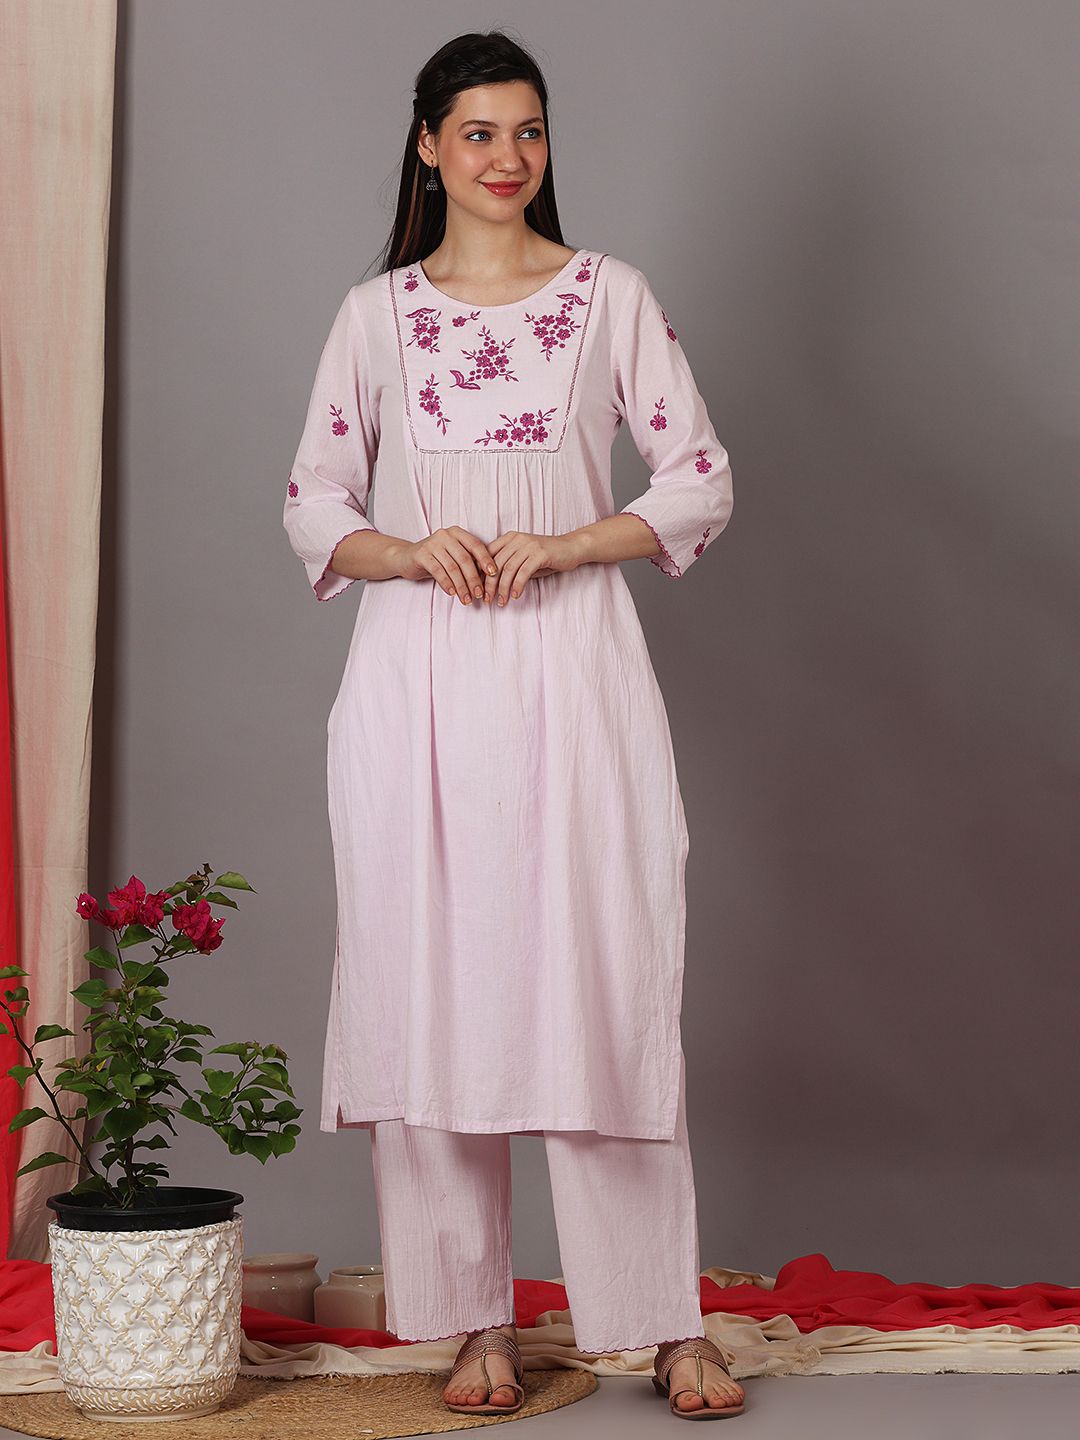 Simplicity | Long dress design, Long kurti designs, Cotton kurti designs